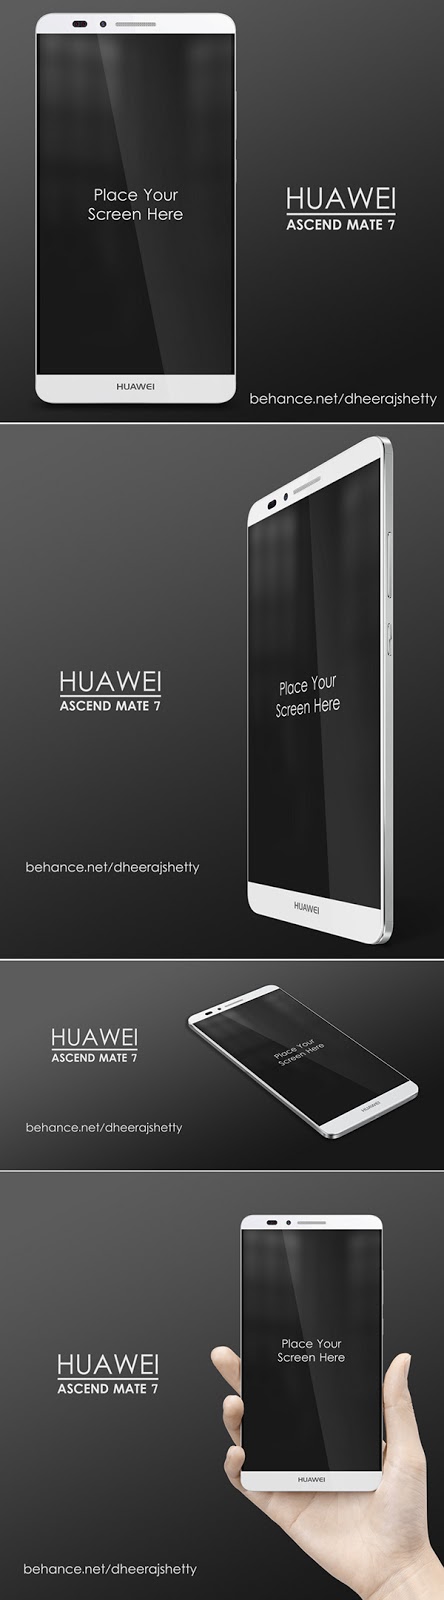 Smartphone & Tablet Mockup PSD Terbaru Gratis - Huawei Ascend Mate 7 PSD Mockup